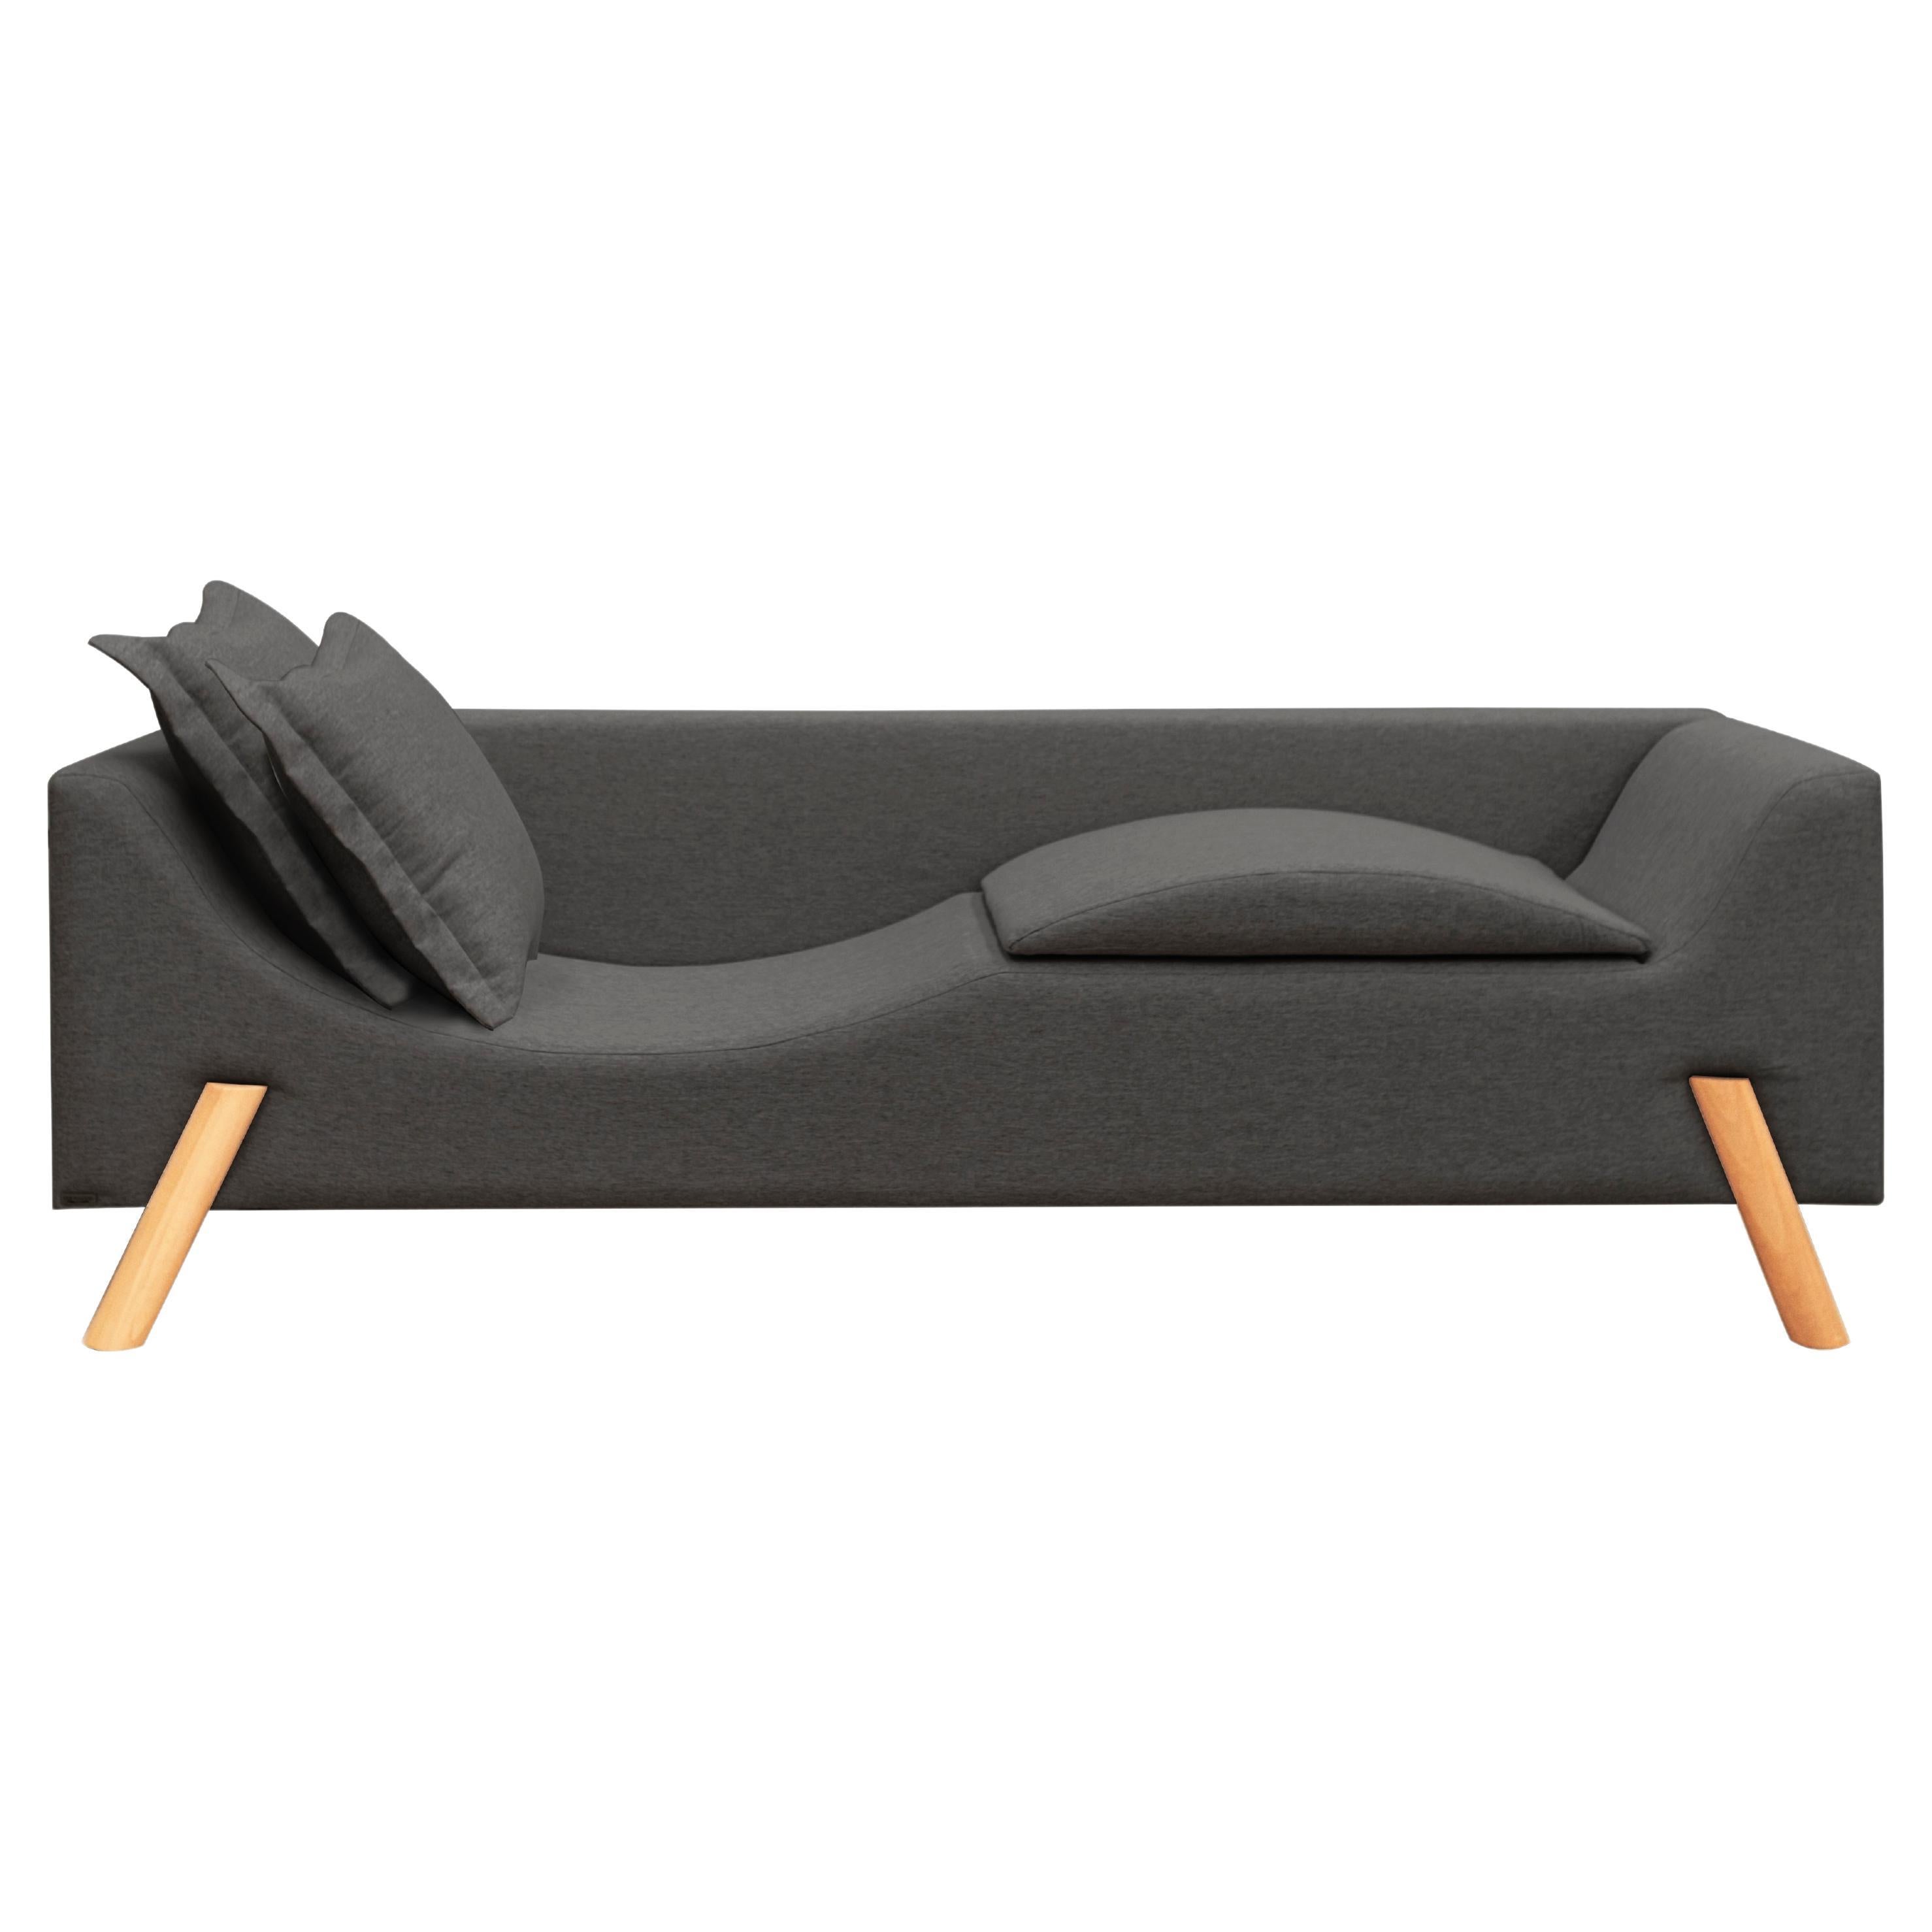 Couch und Chaise Longue „Flag“ aus grauem Leinen und Holz mit zwei Armen